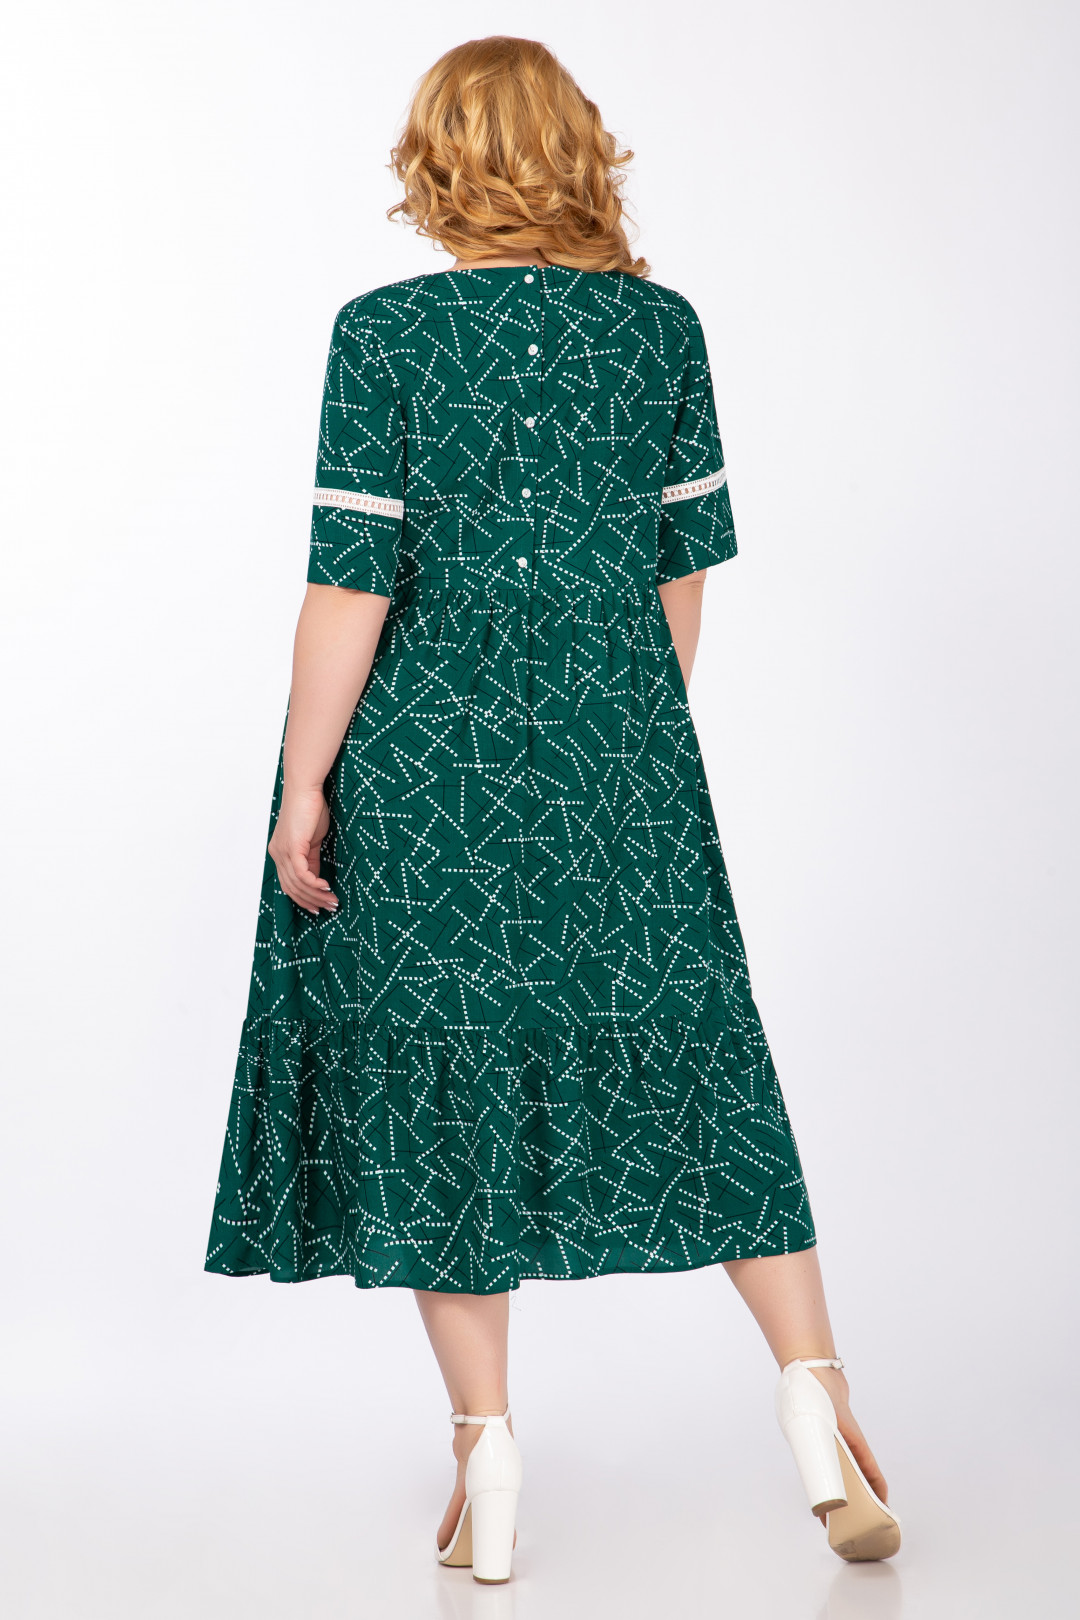 Платье Элль-стиль 2060/1 зеленый принт